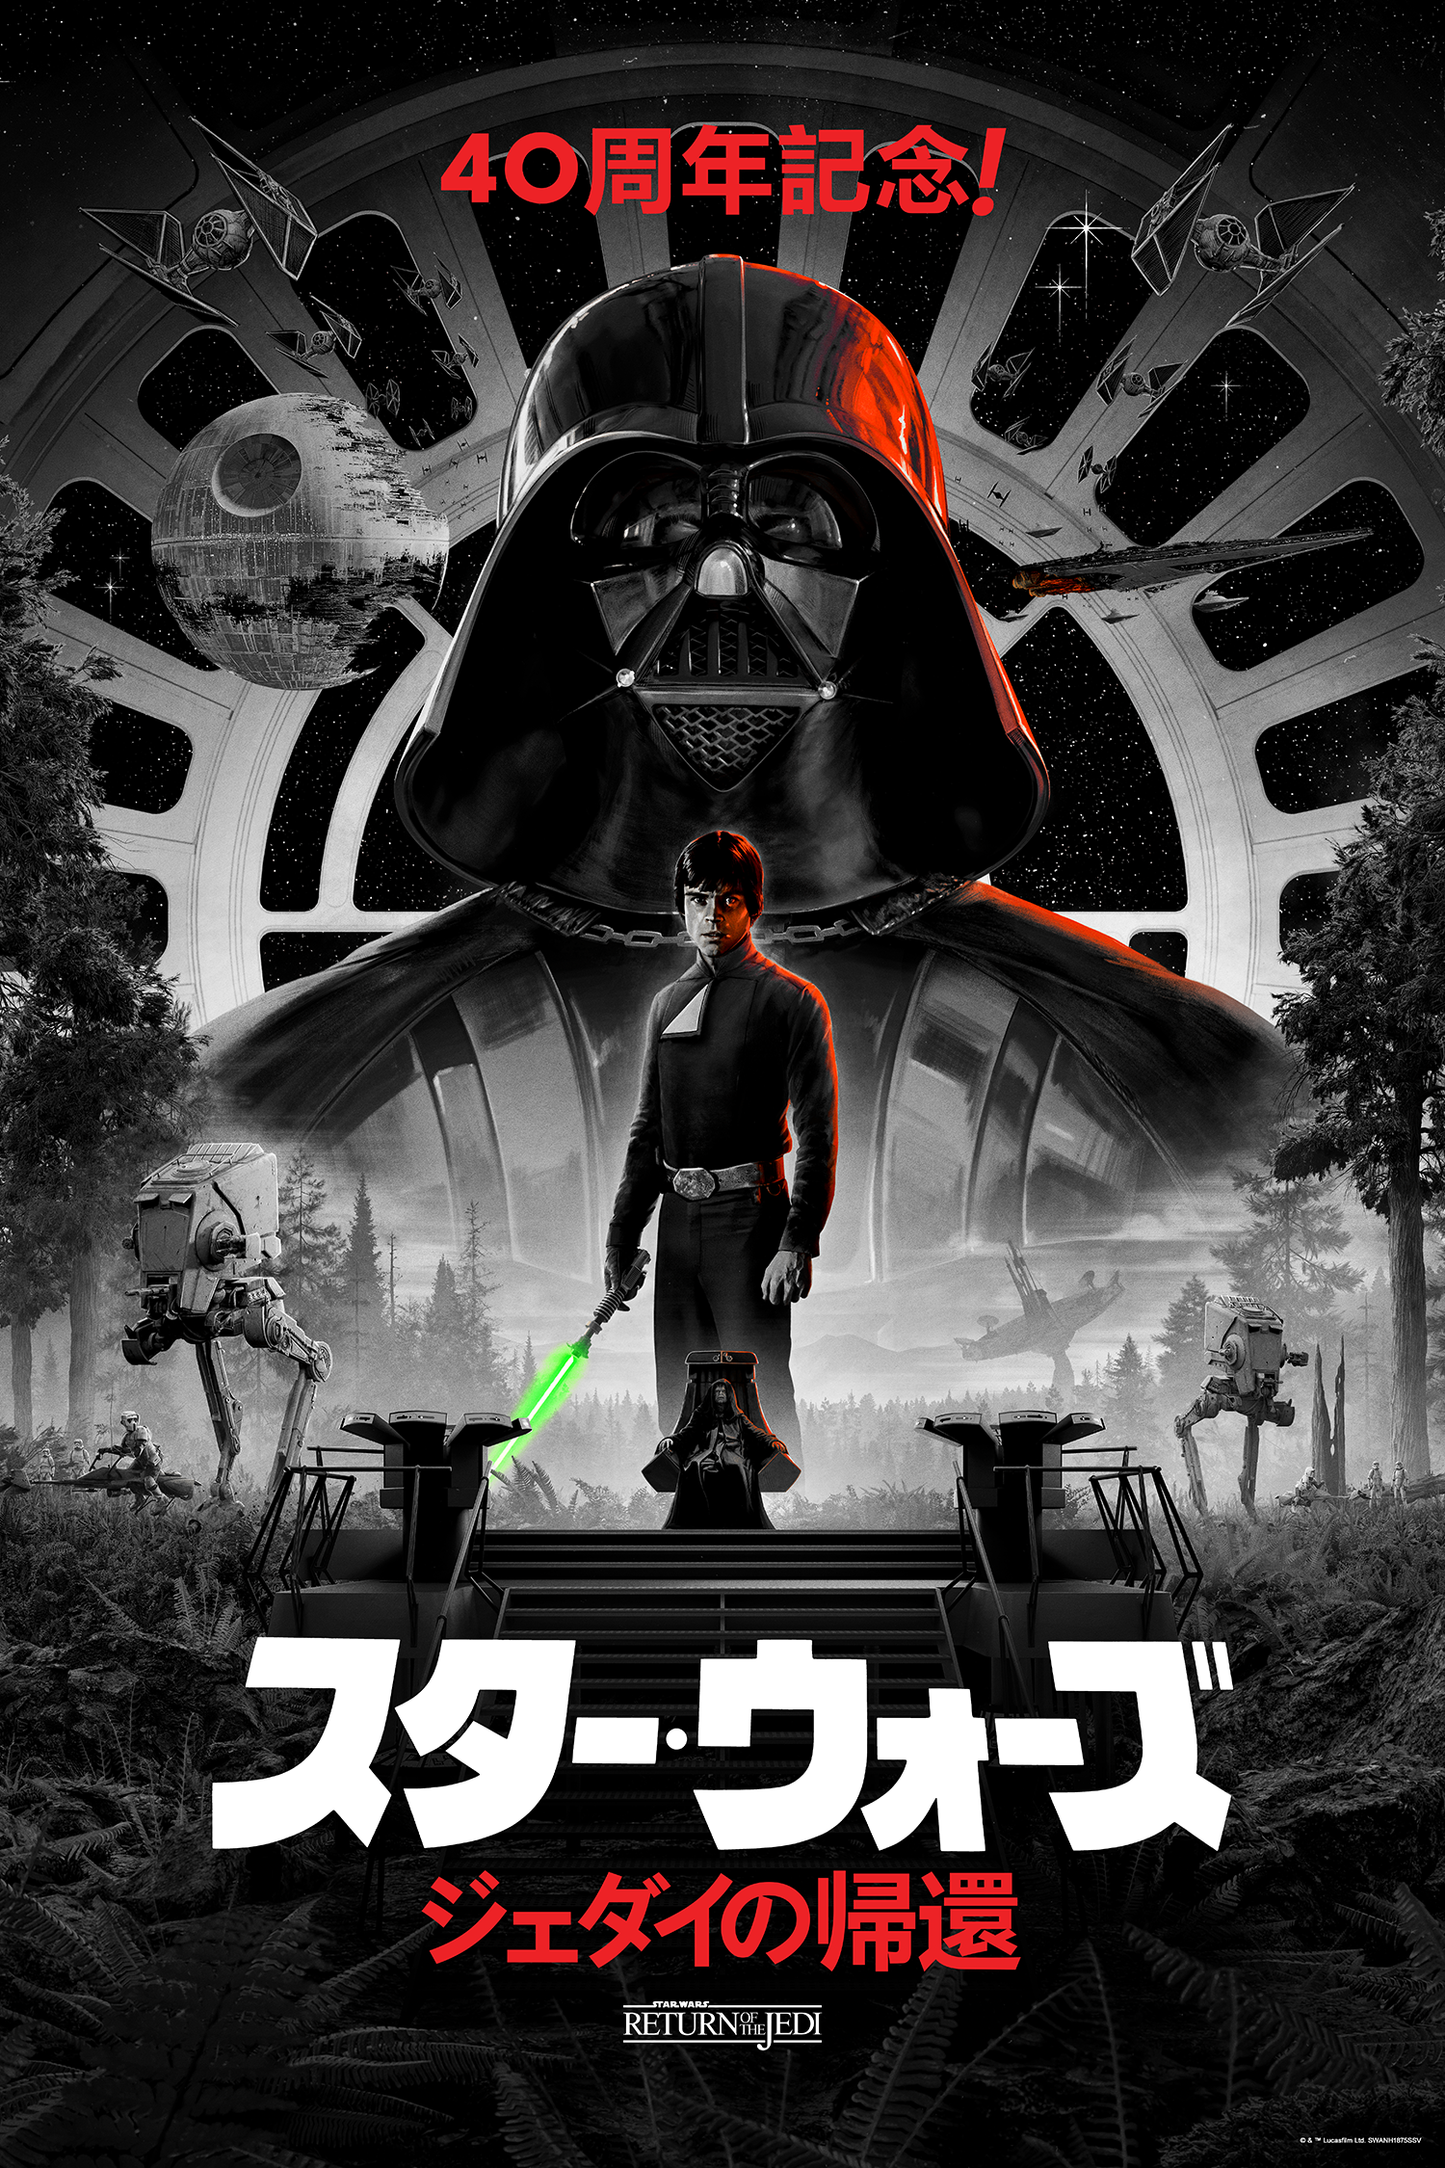 Matt Ferguson "Return of the Jedi - 40th Anniv." Japanese Variant